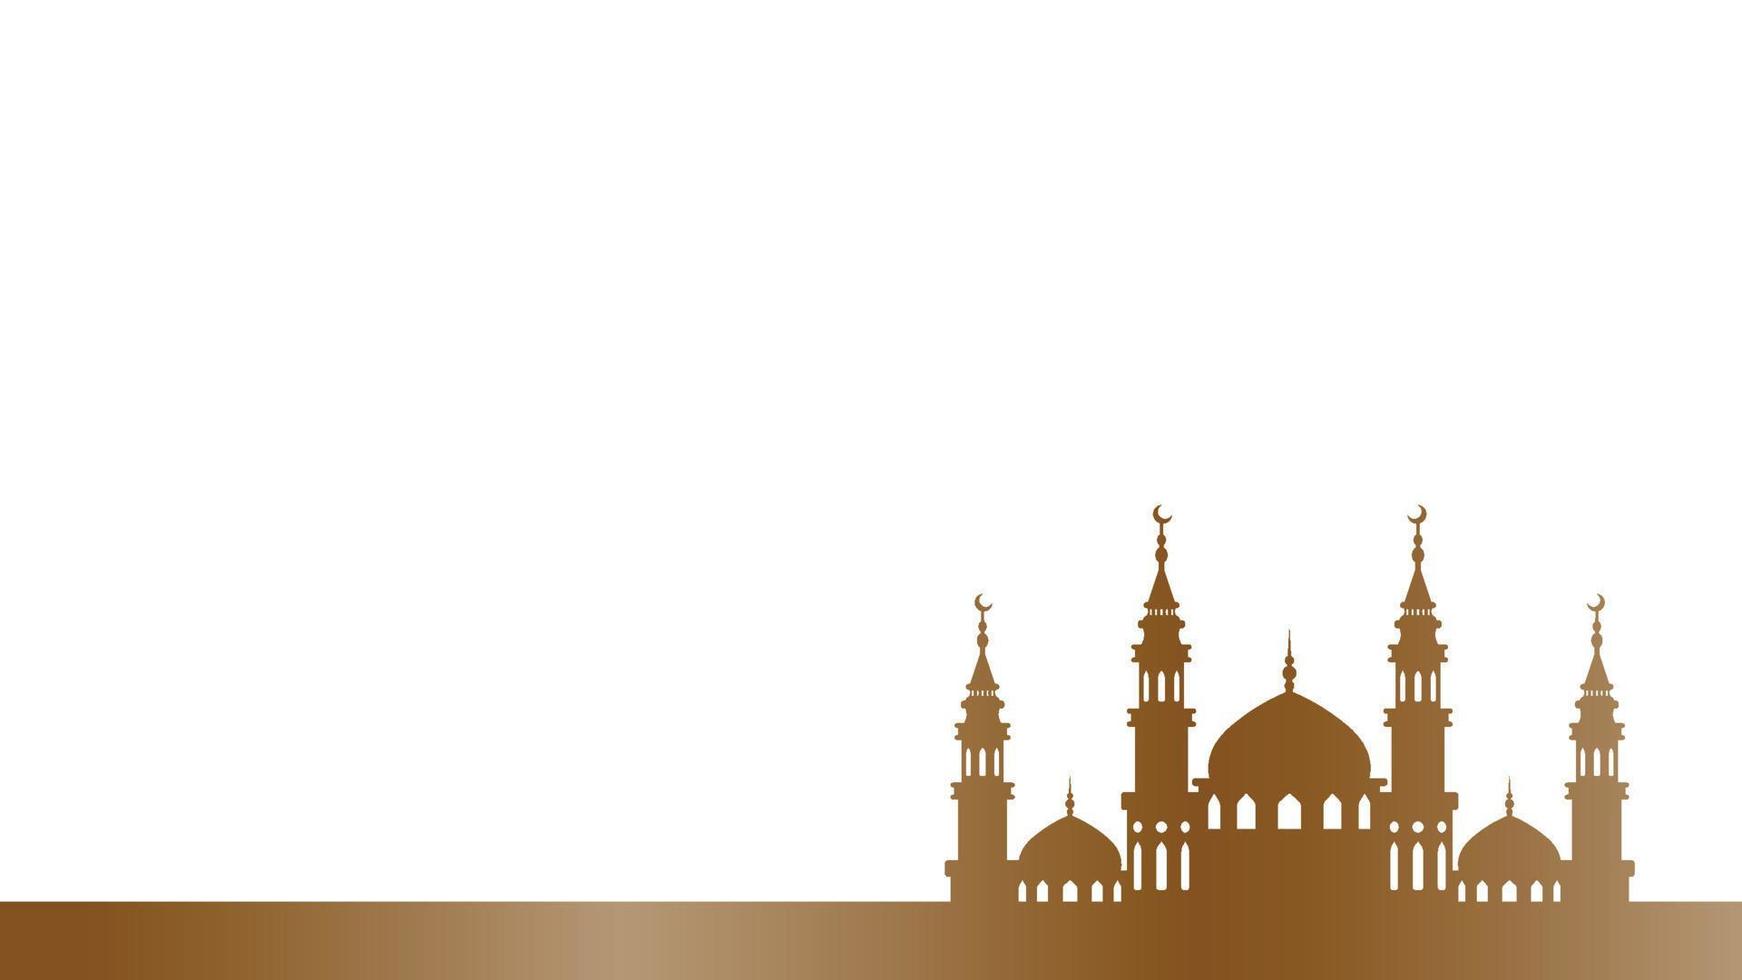 Silhouette dekorative Moschee Ornament für Banner-Design-Vektorgrafik vektor